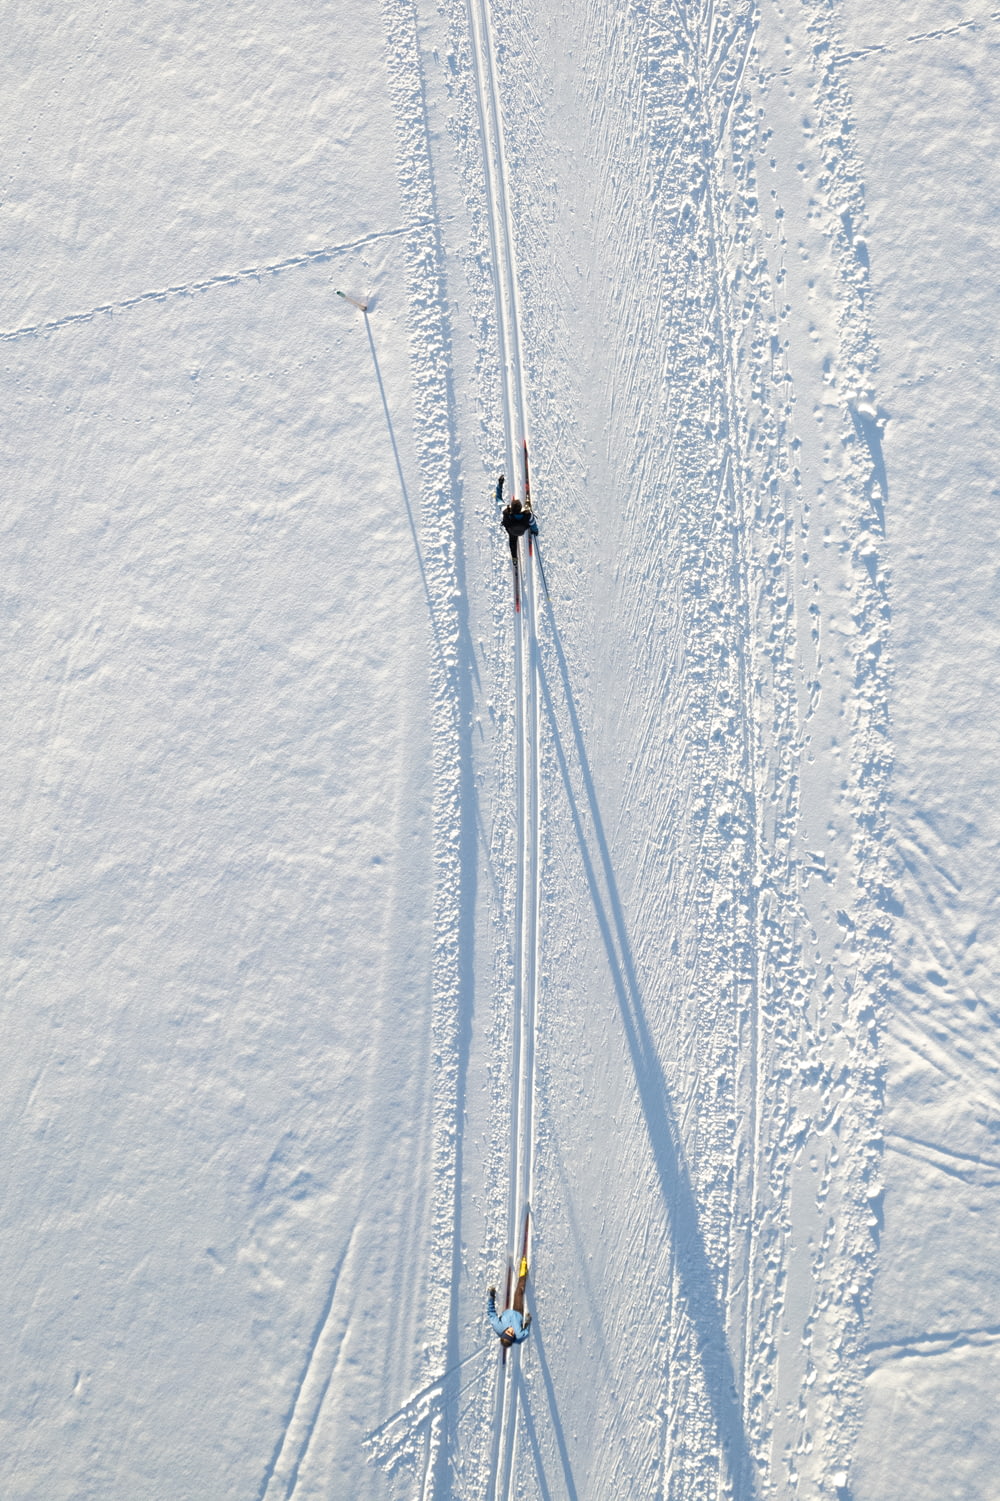 눈 덮인 슬로프에서 스키를 타는 두 사람